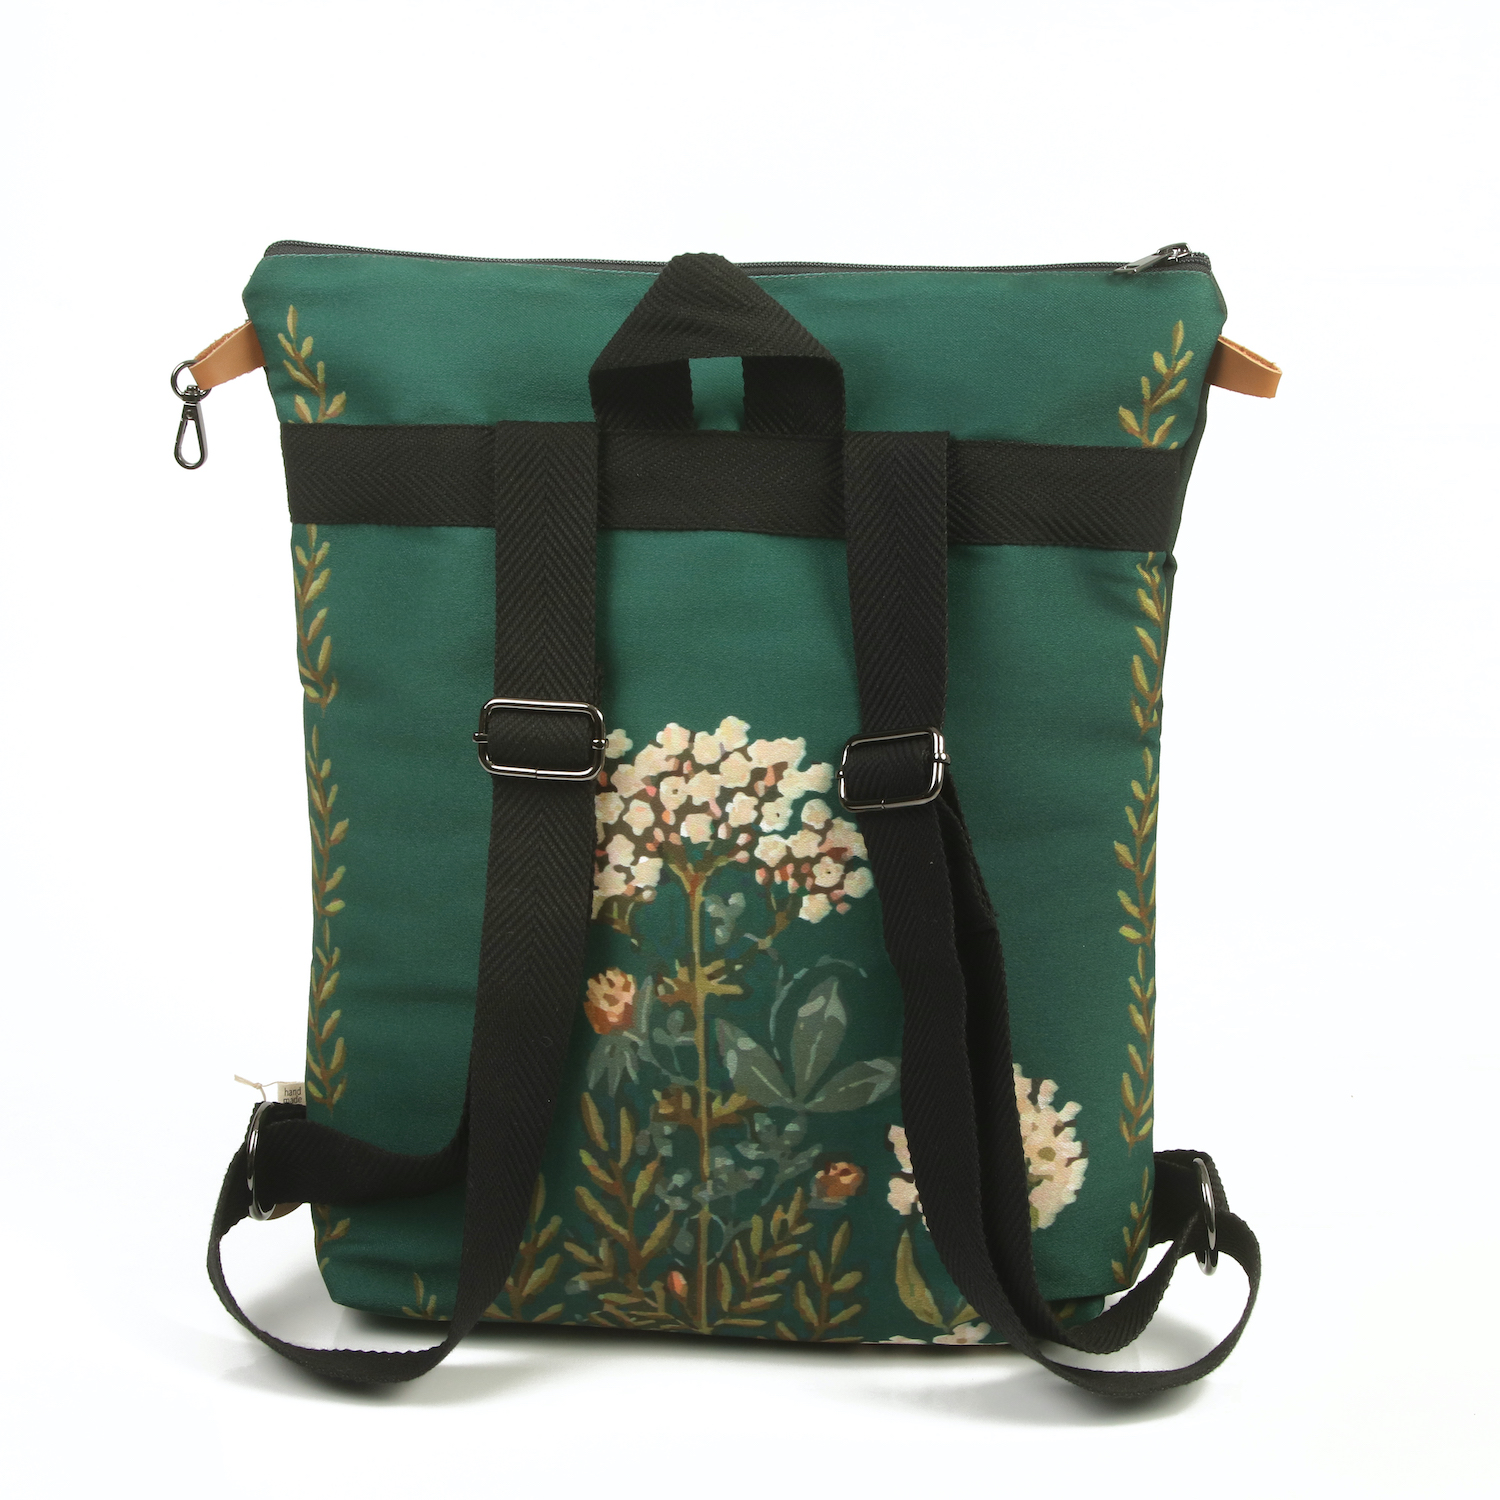 LazyDayz Designs Backpack γυναικείος σάκος πλάτης χειροποίητος bb0509c